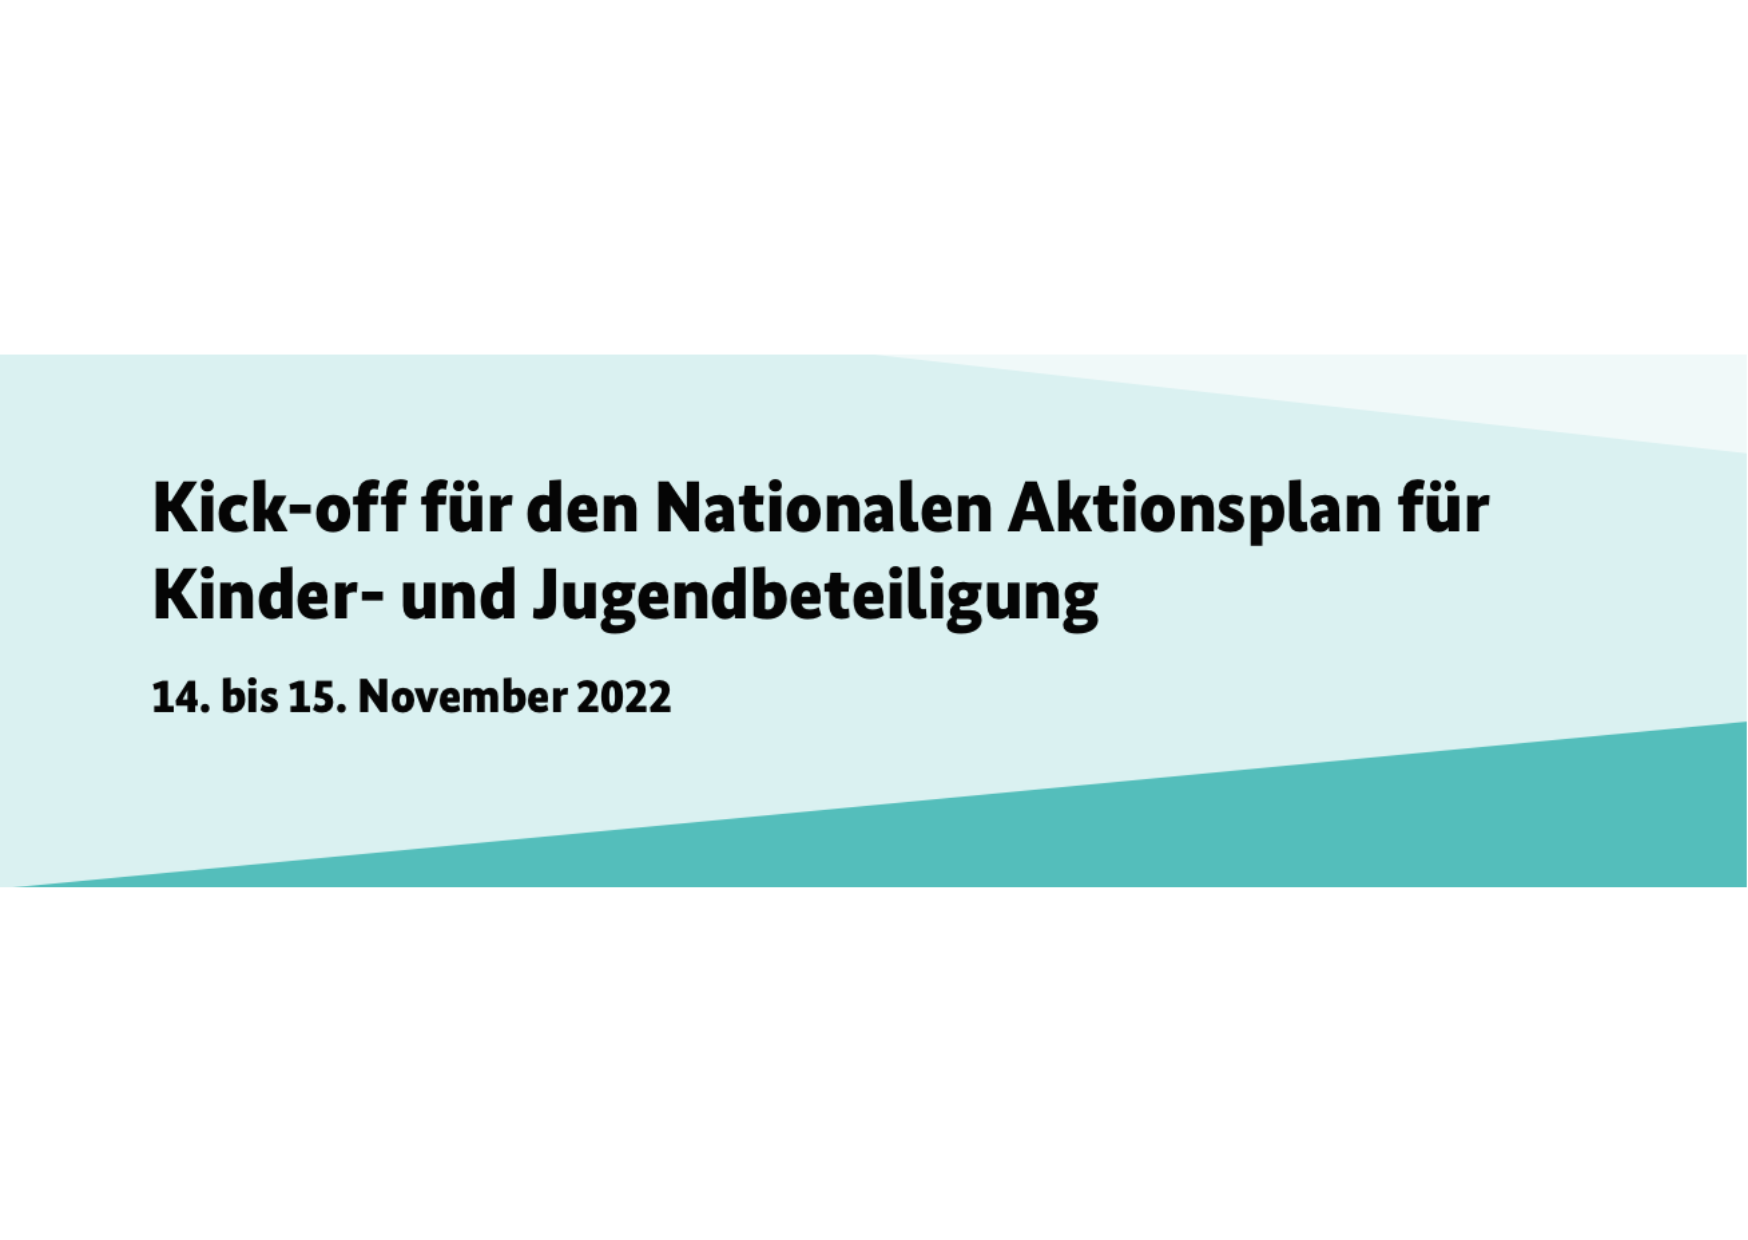 Kick-off für den Nationalen Aktionsplan für Kinder- und Jugendbeteiligung 14. bis 15. November 2022. ©Servicestelle Jugendbeteiligung